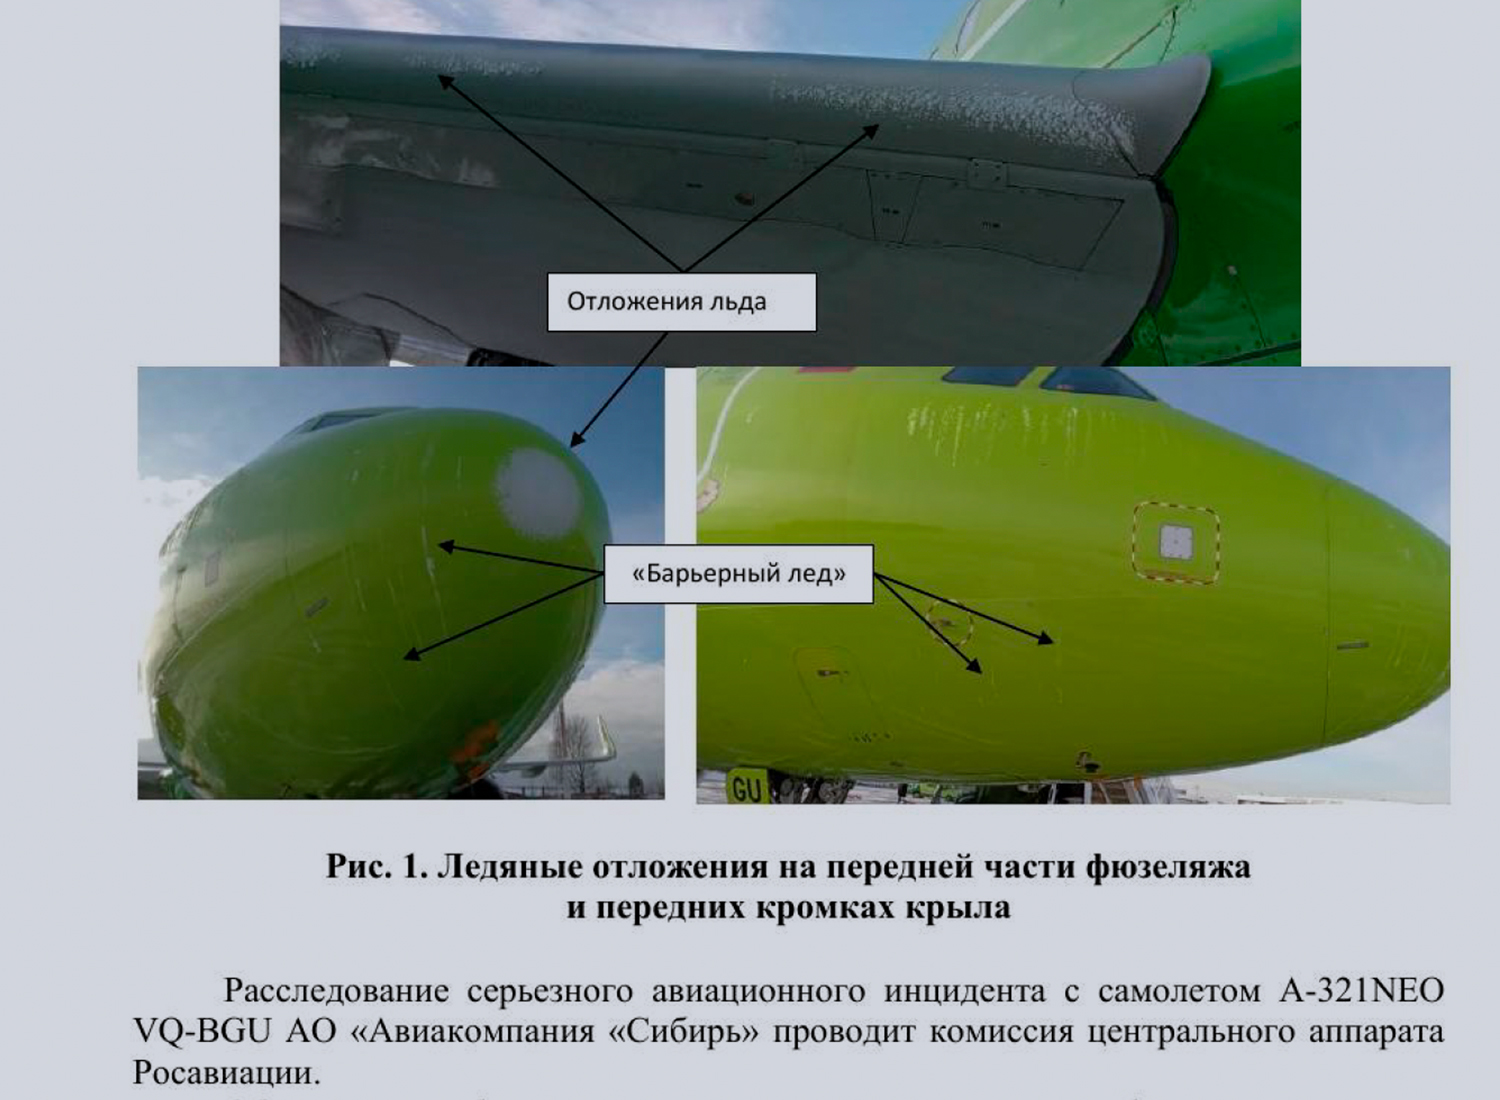 Обнаруженная наледь в носовой части самолёта, которая, предположительно, привела к отказу систем воздушных сигналов (из документа Александра Нерадько).